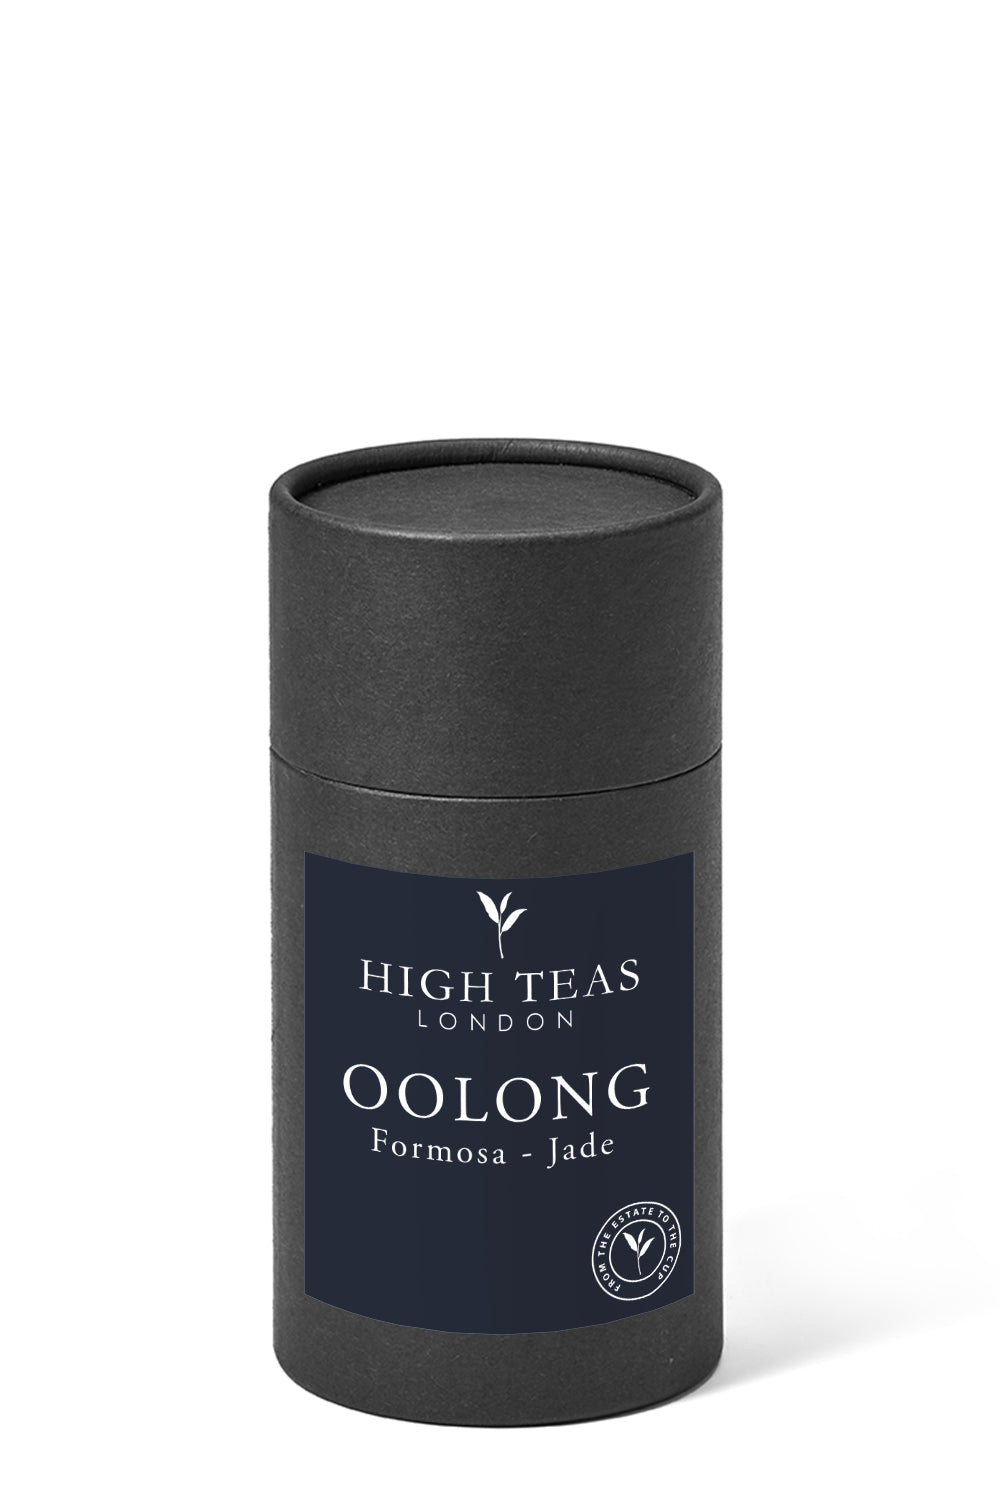 Formosa - Jade Oolong-60g gift-Loose Leaf Tea-High Teas